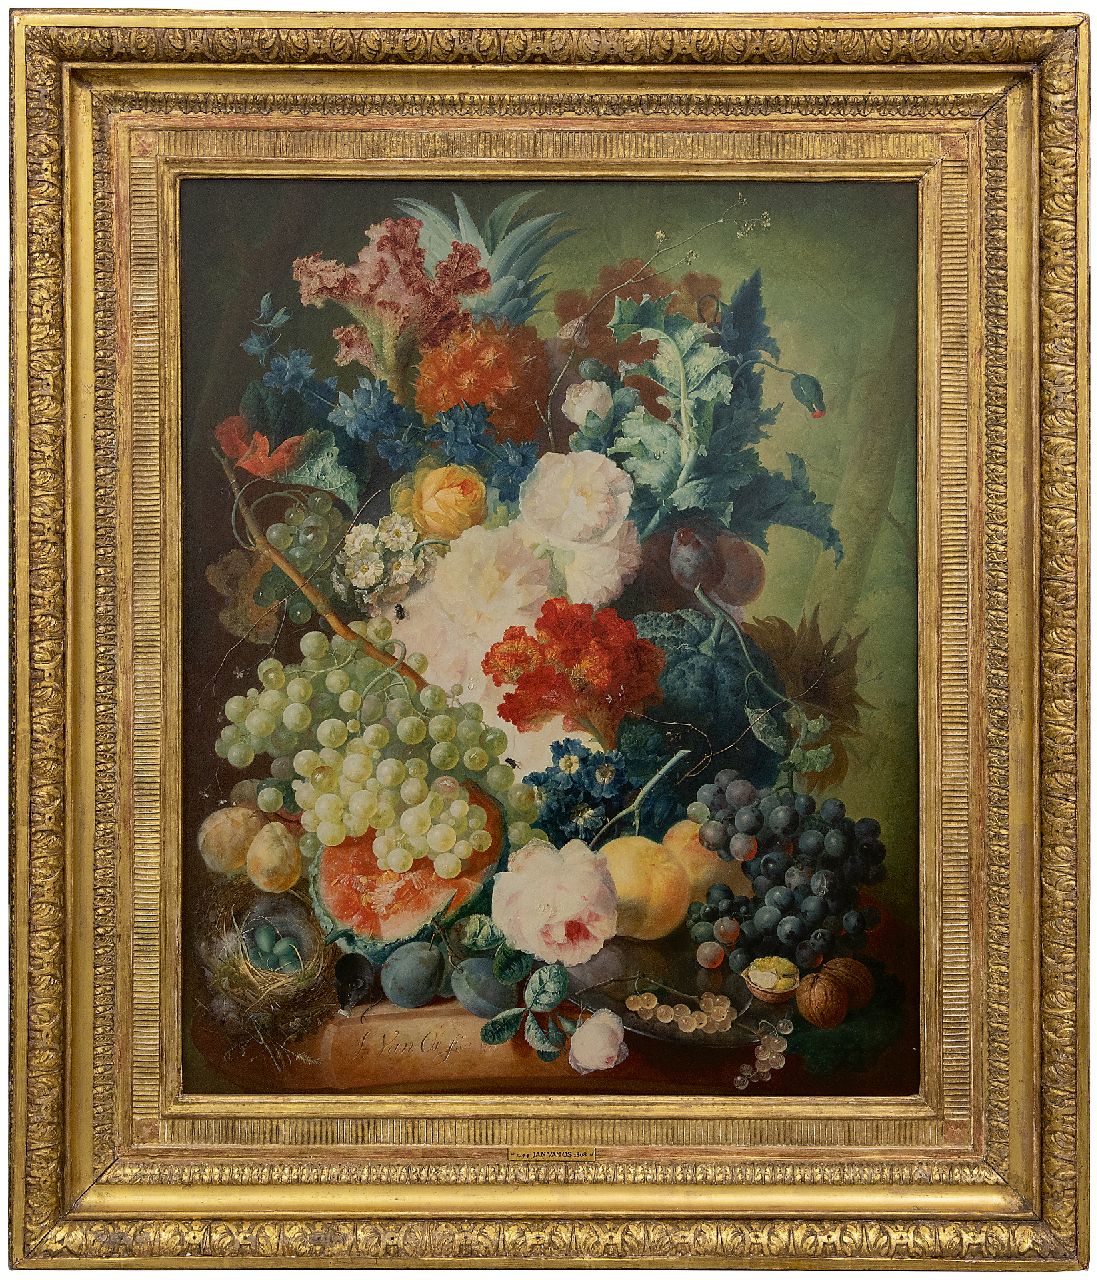 Os J. van | Jan van Os | Gemälde zum Verkauf angeboten | Blumenstillleben mit Früchten, einer Maus und einem Vogelnest, Öl auf Holz 69,7 x 55,1 cm, Unterzeichnet u.l. und datiert 1774